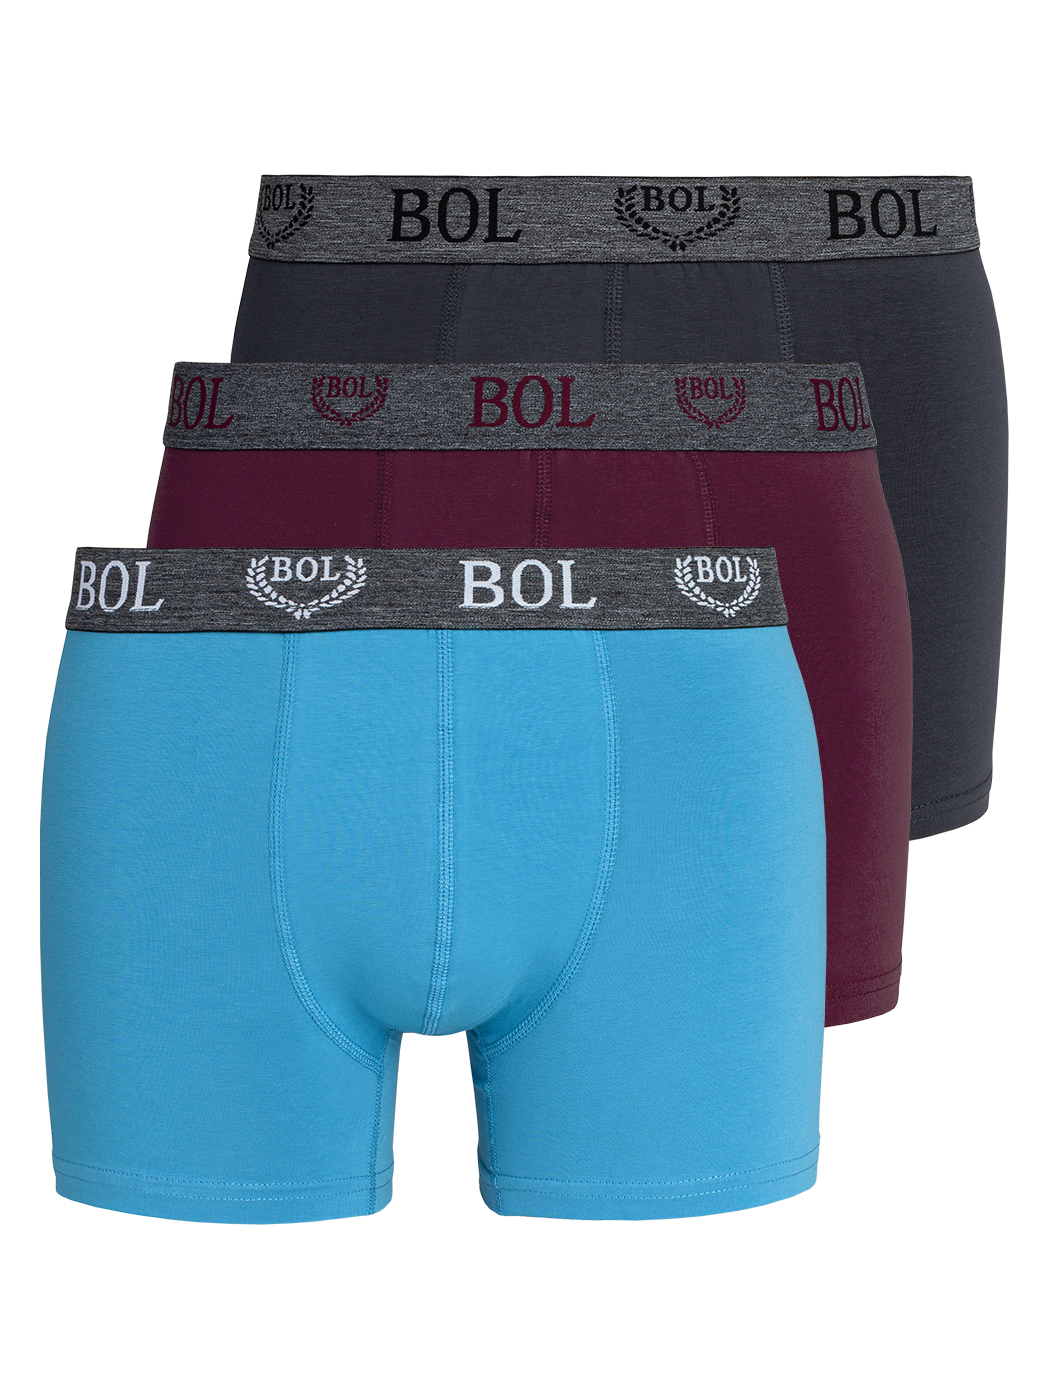 Комплект трусов мужских BOL Men's ebox178_s522 разноцветных M